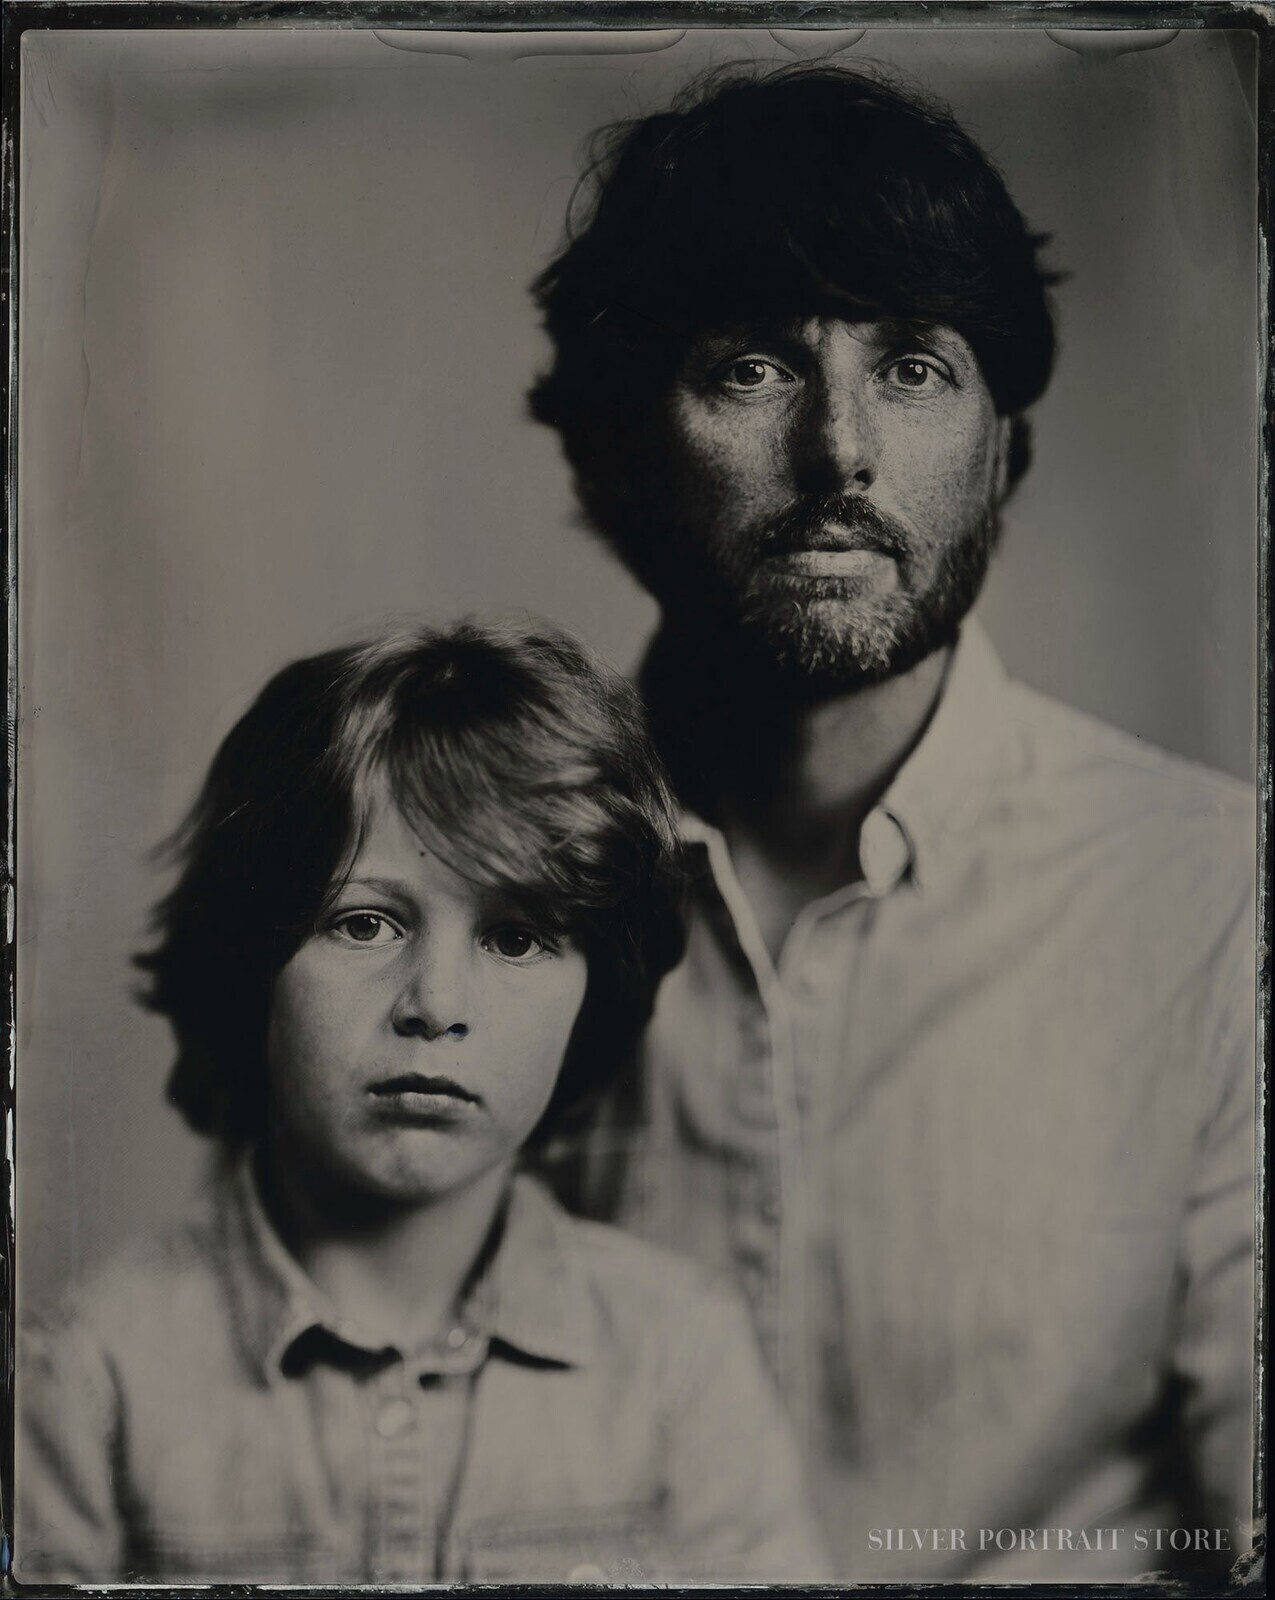 Emiel en Faas-Silver Portrait Store-Wet plate collodion-Tintype 20 x 25 cm.